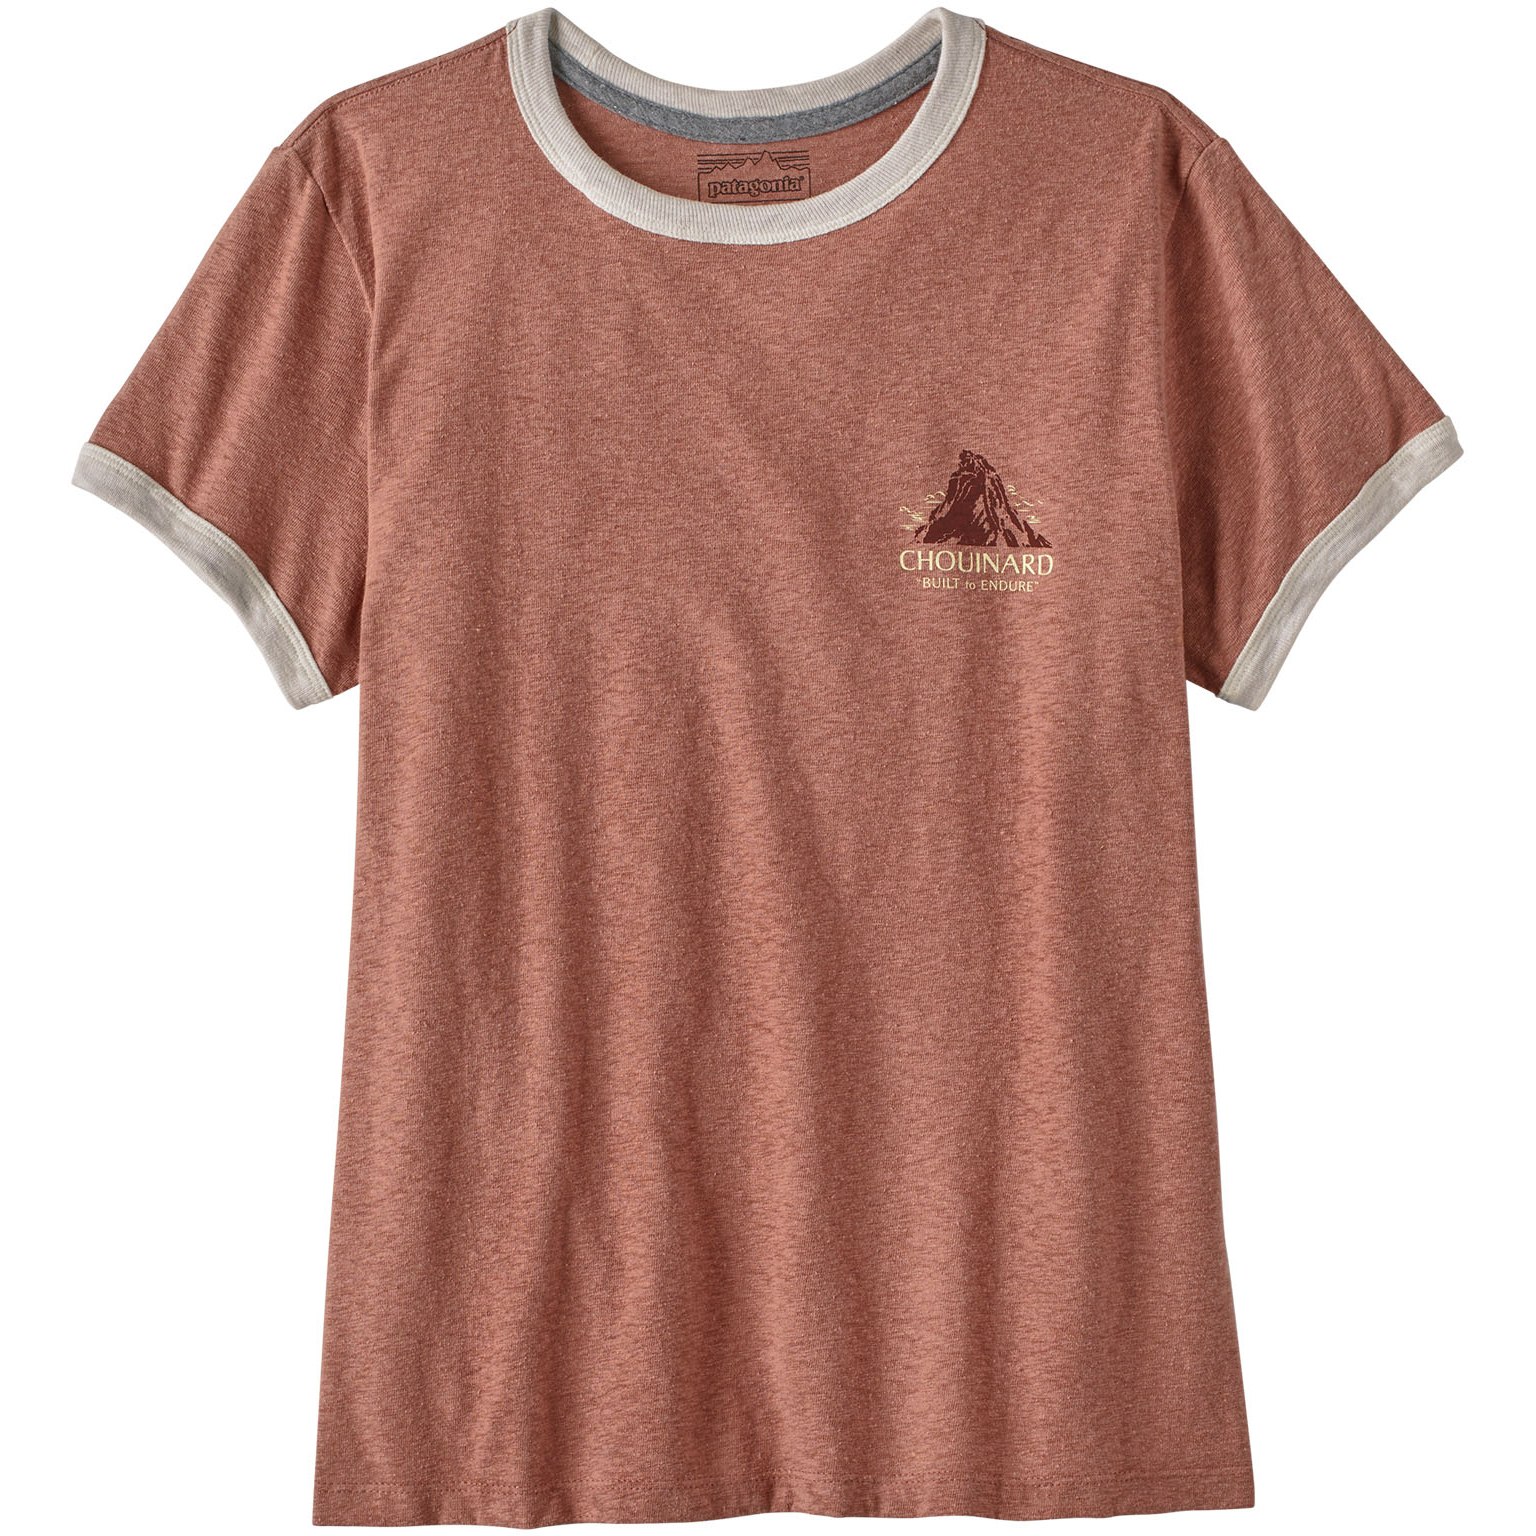 Produktbild von Patagonia Chouinard Crest Ringer Responsibili-Tee T-Shirt Damen - Sienna Clay